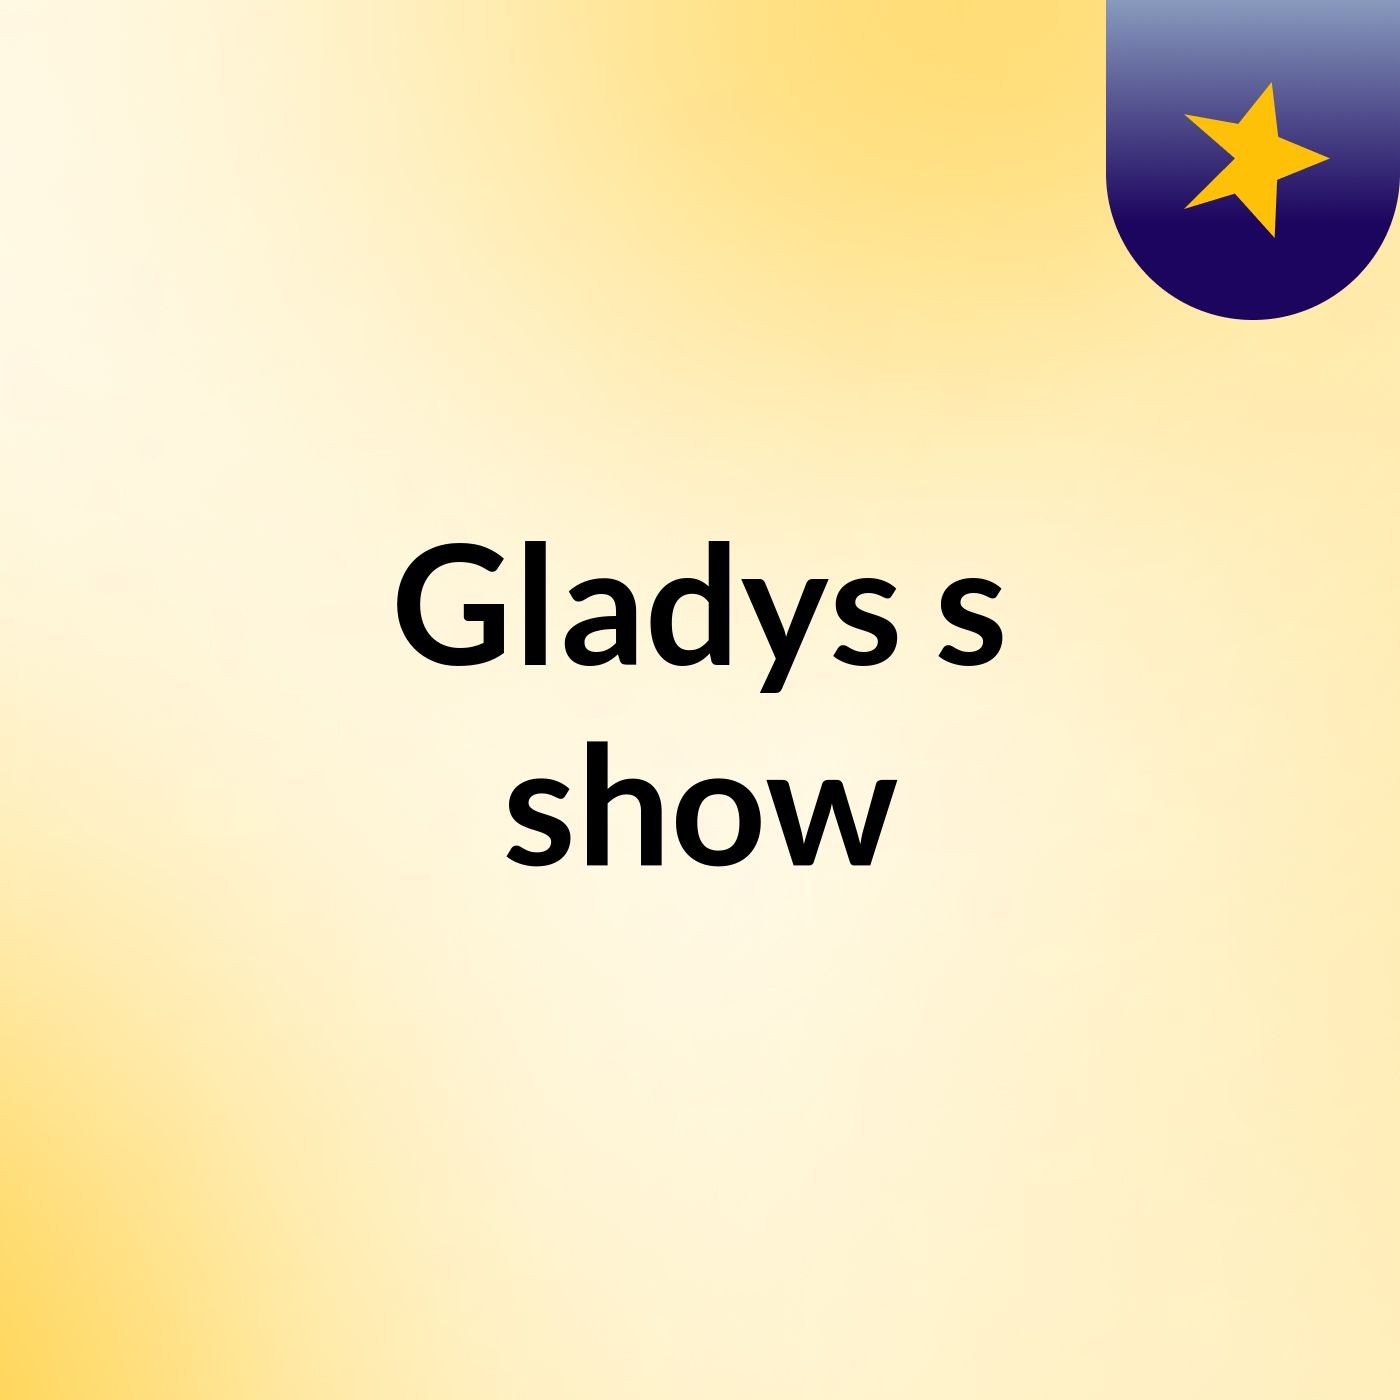 Gladys's show